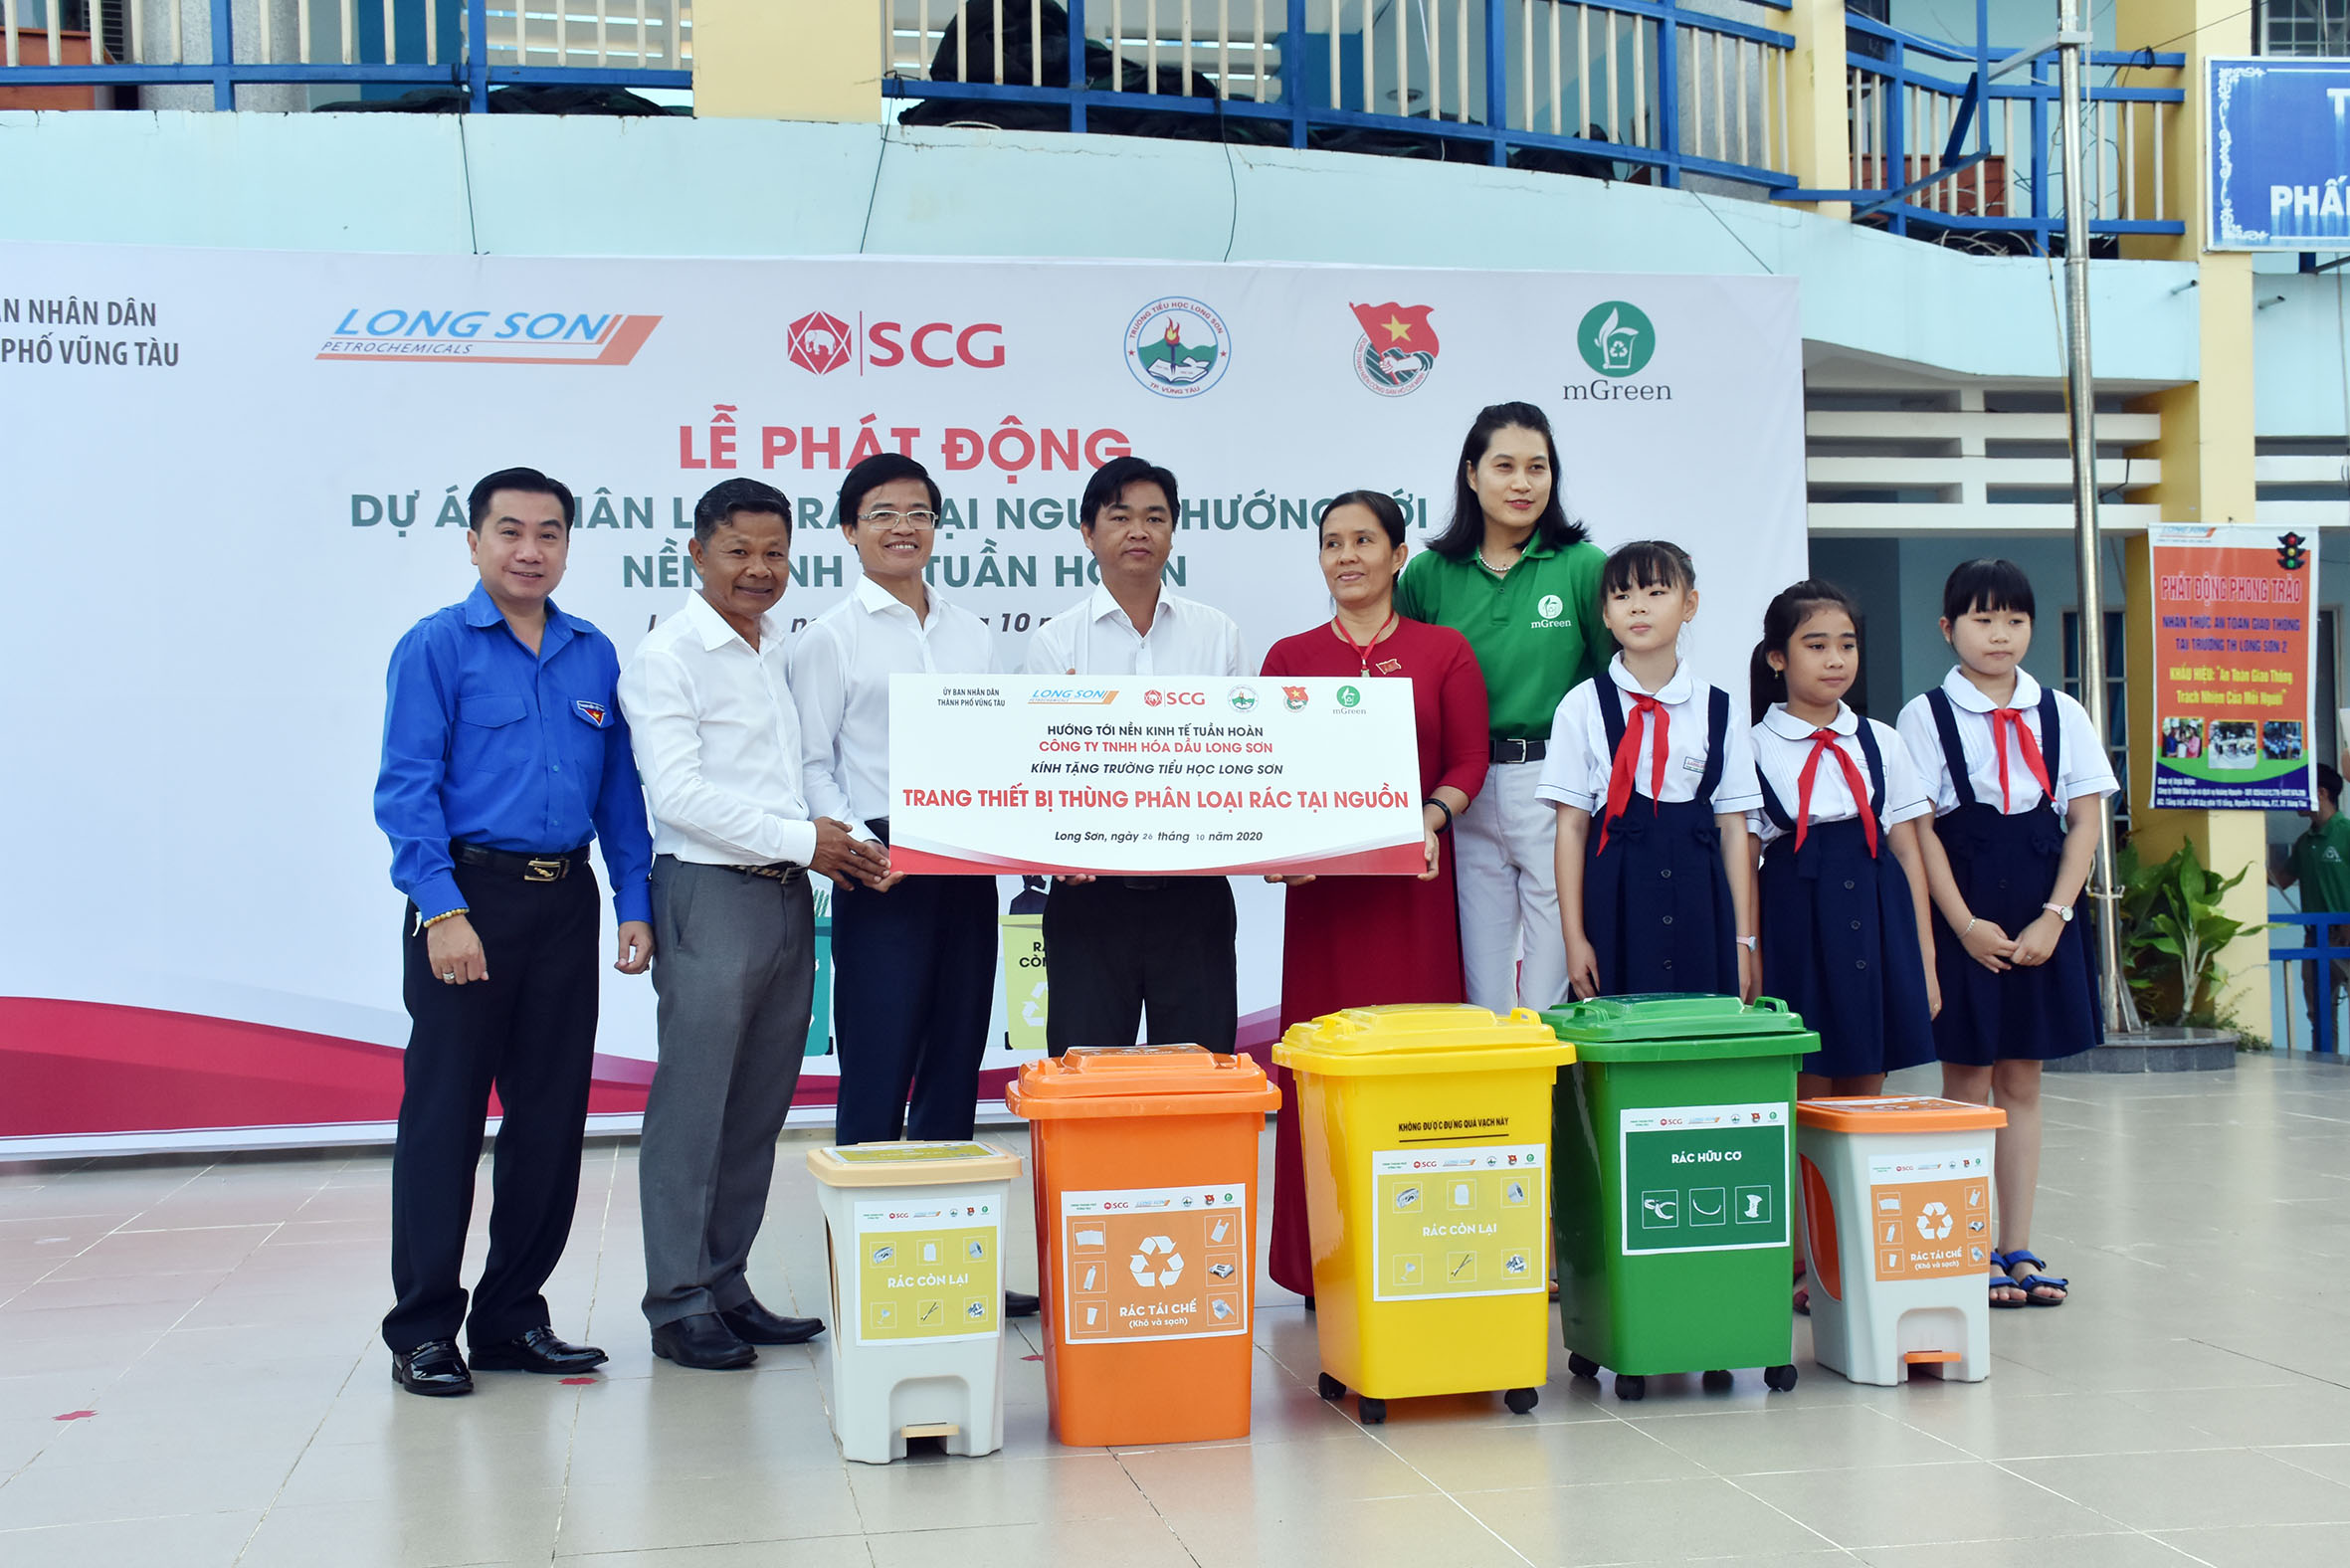 Ban tổ chức trao thùng phân loại rác tại nguồn cho Trường TH Long Sơn 2.    